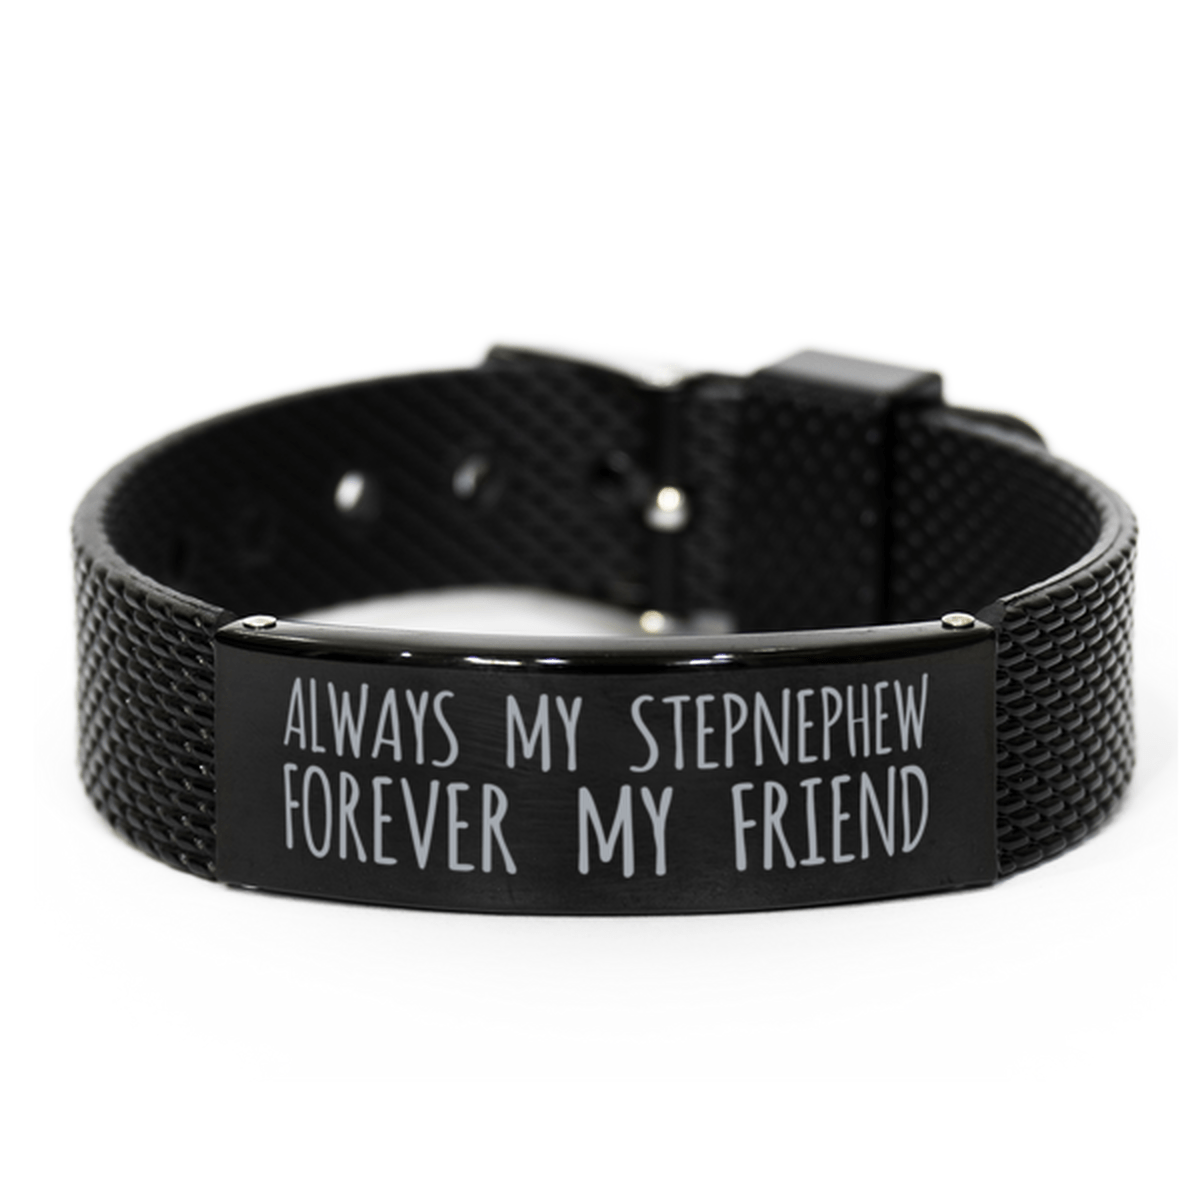 Inspirational Stepnephew Black Shark Mesh Bracelet, Always My Stepnephew Forever My Friend, Best Birthday Gifts for Family Friends